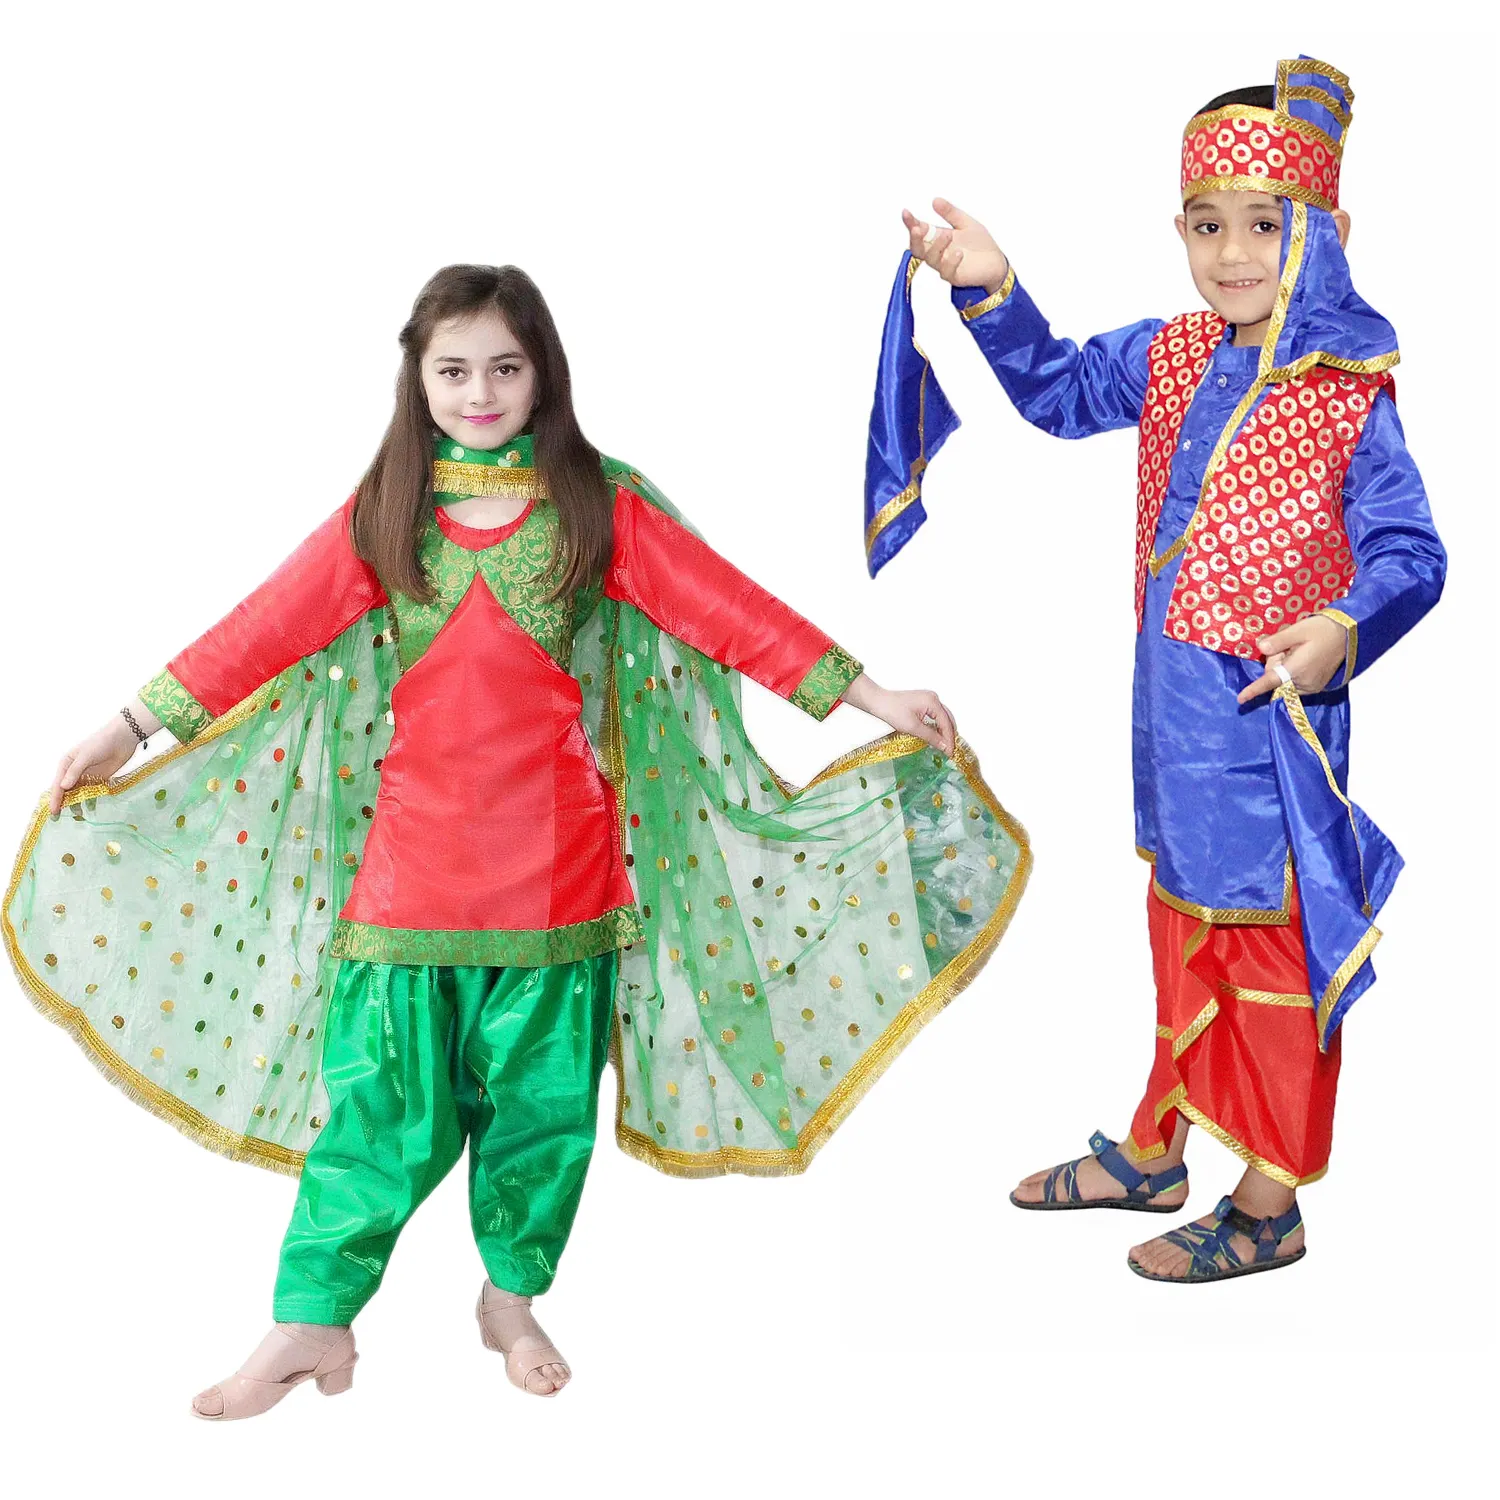 Venta al por mayor de ropa tradicional del Estado indio, disfraz de niño y niña Punjabi para función anual, espectáculos de escenario, fiesta temática